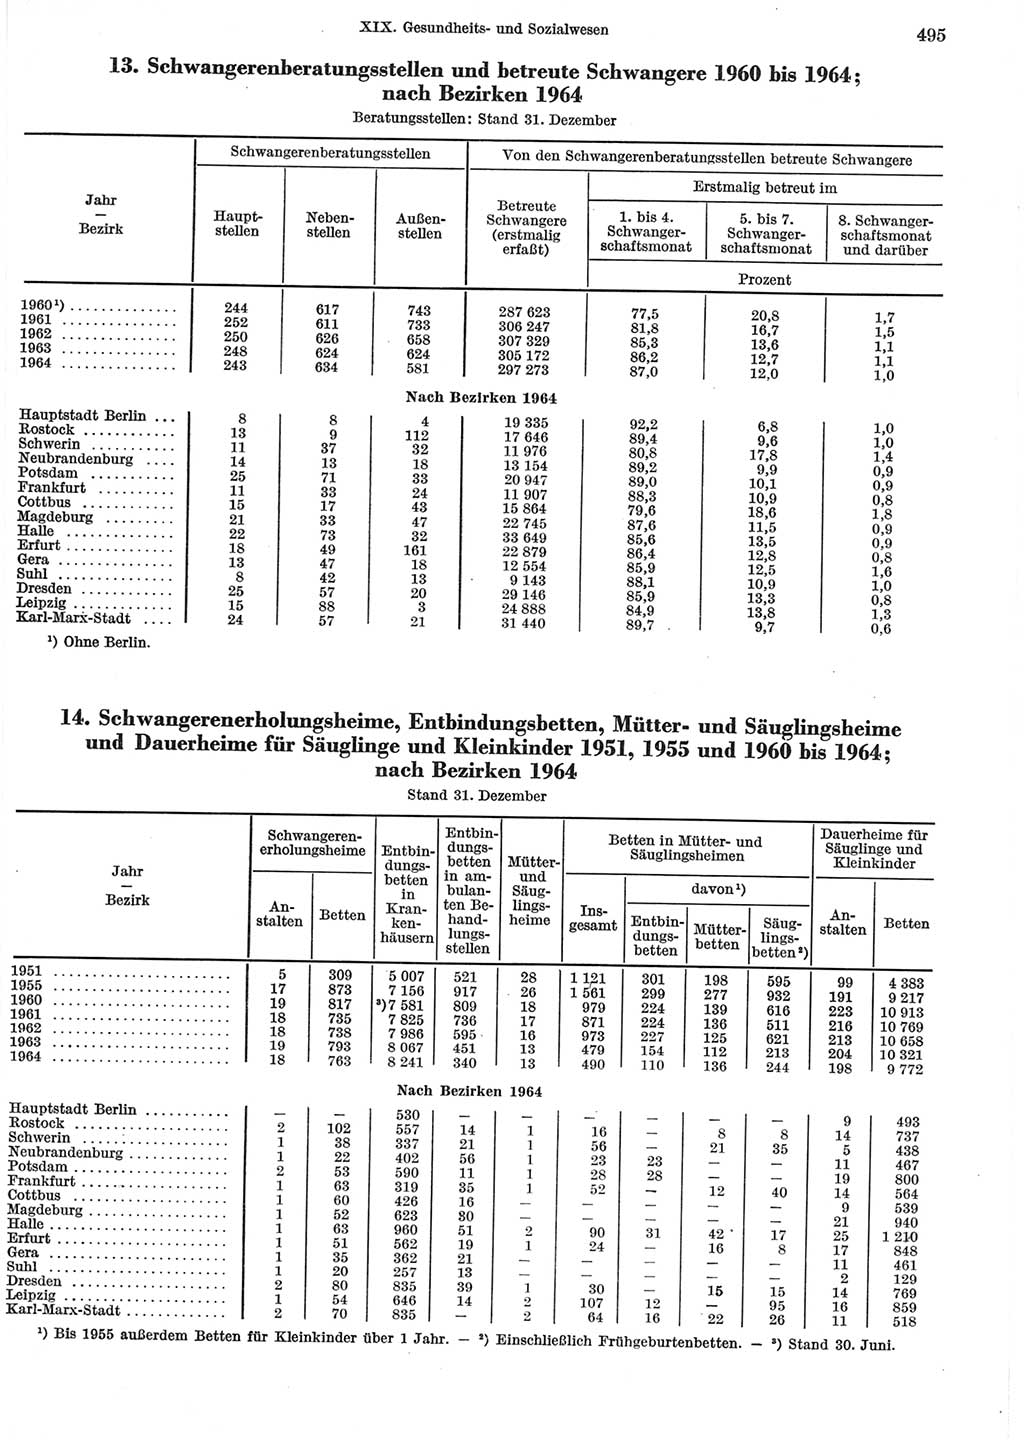 Statistisches Jahrbuch der Deutschen Demokratischen Republik (DDR) 1965, Seite 495 (Stat. Jb. DDR 1965, S. 495)